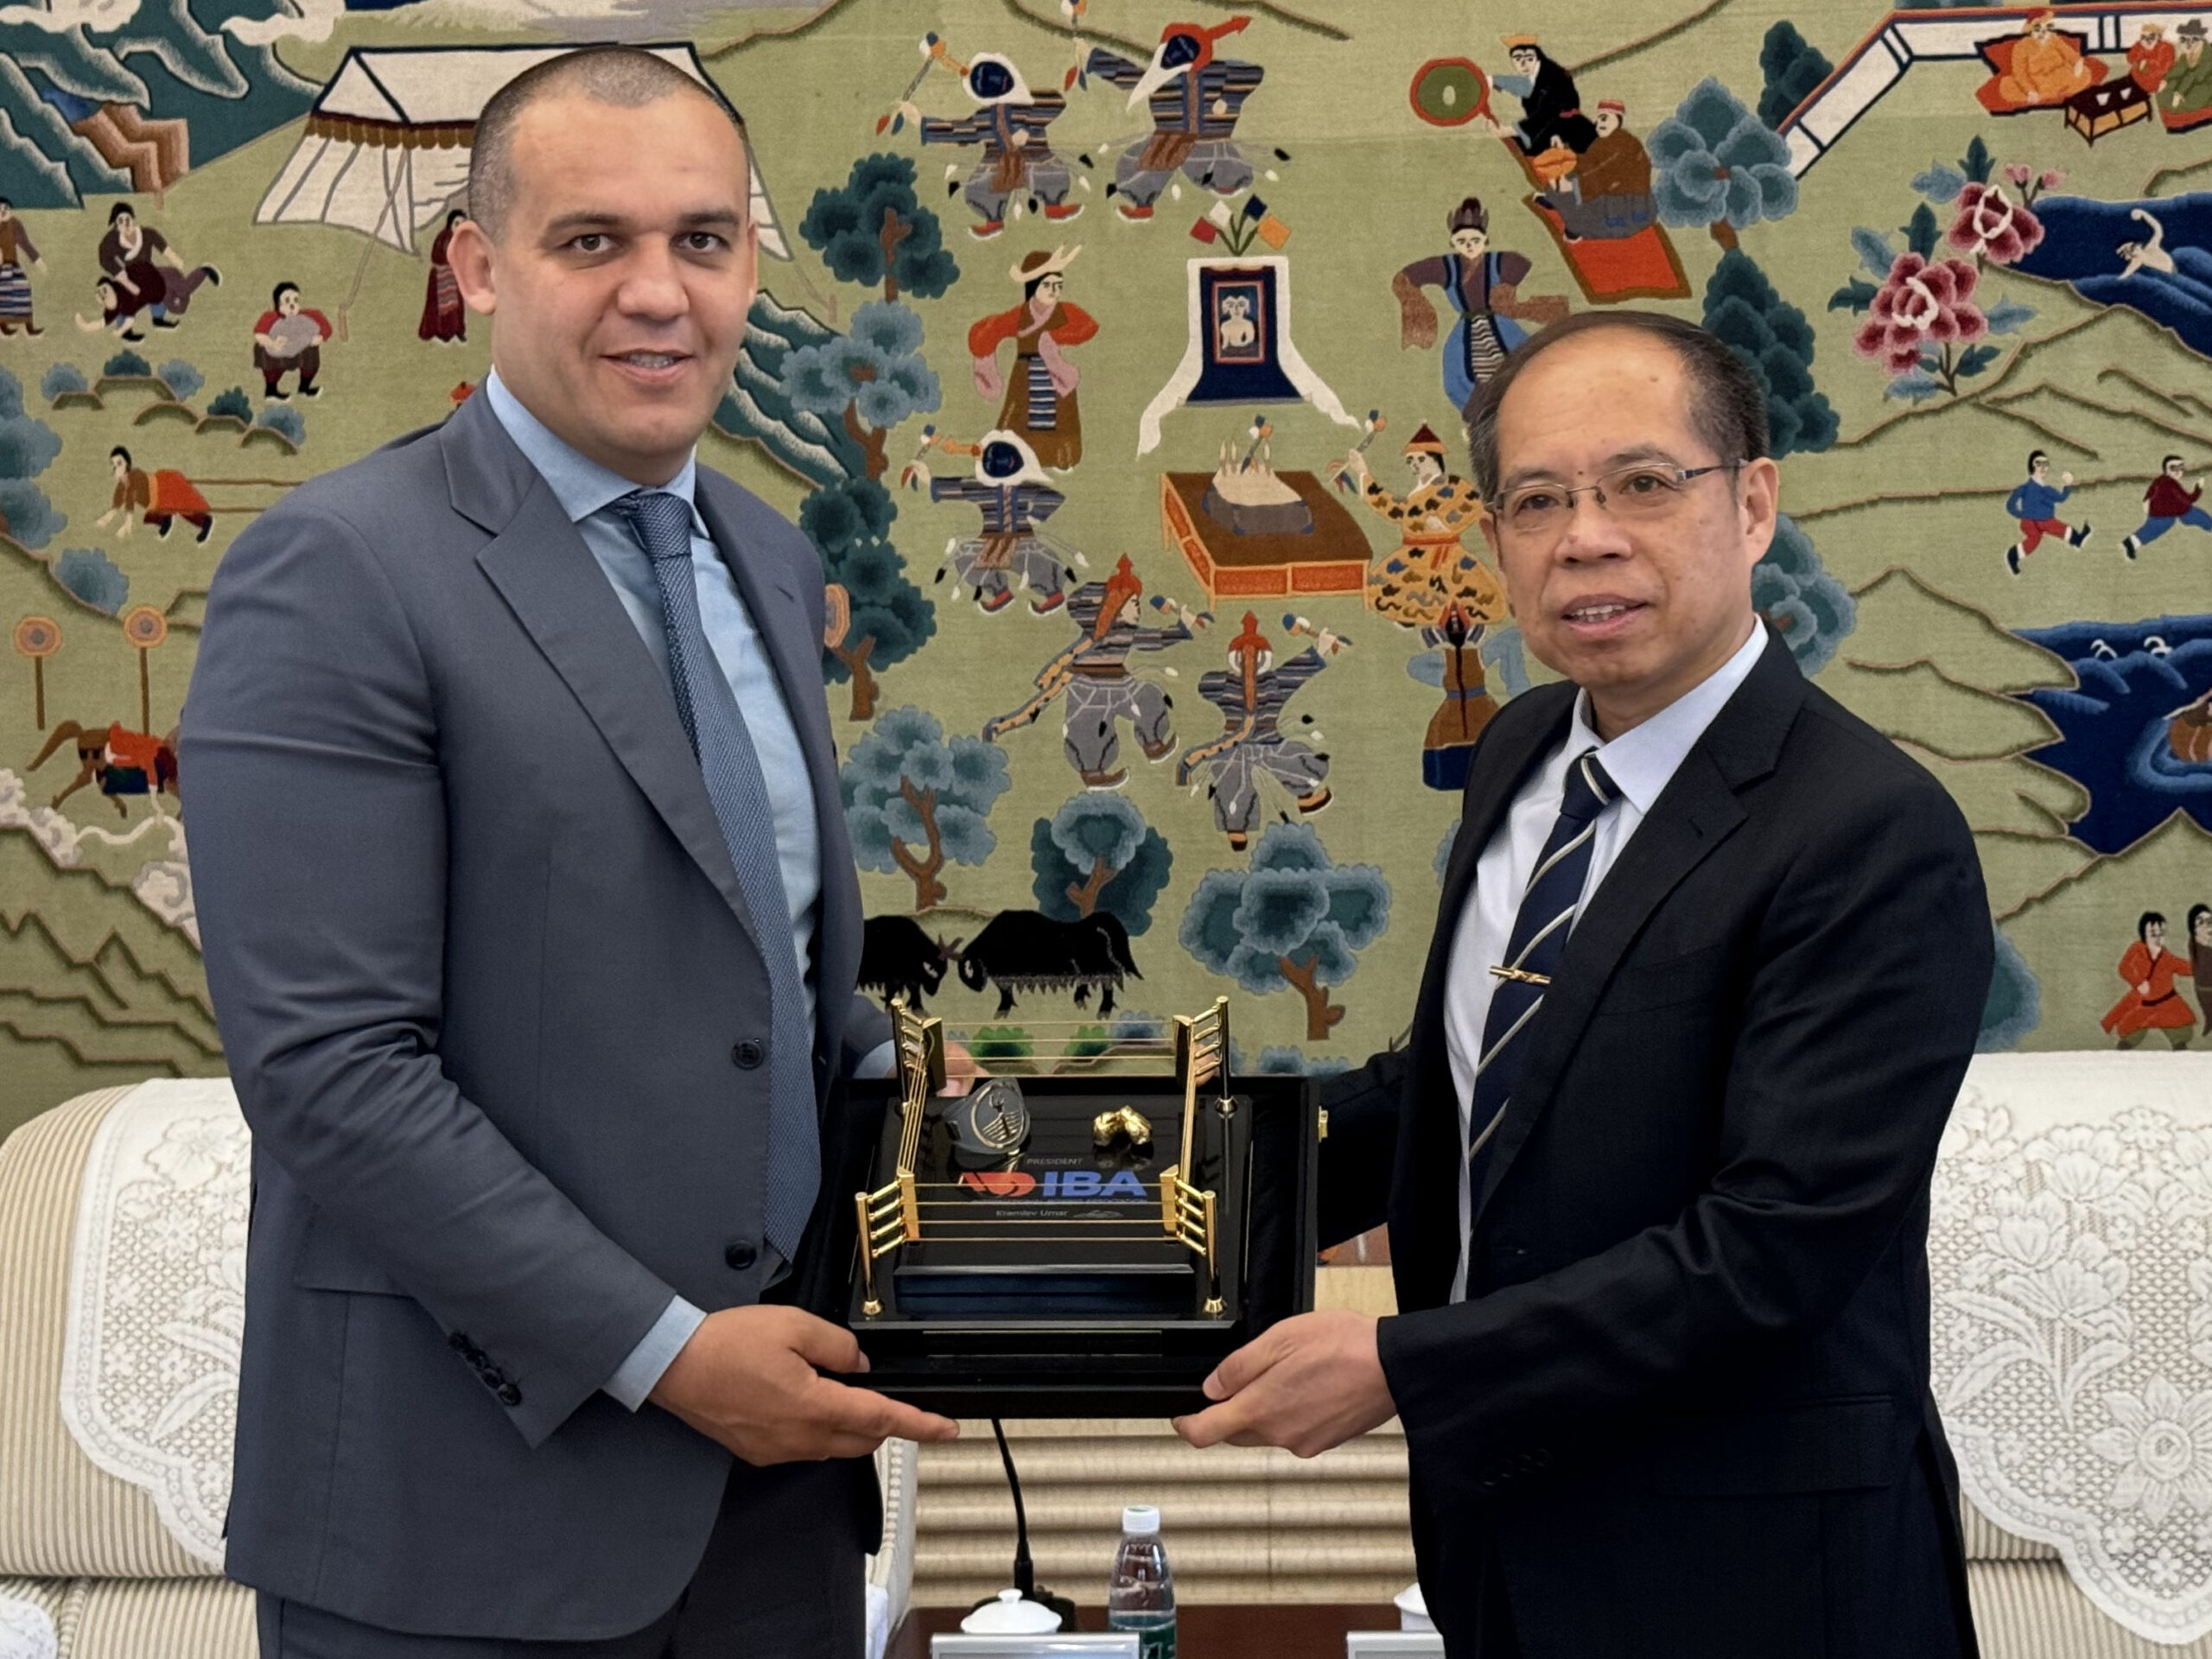 IBA President is awarded Honorary Professor of Beijing Sport University